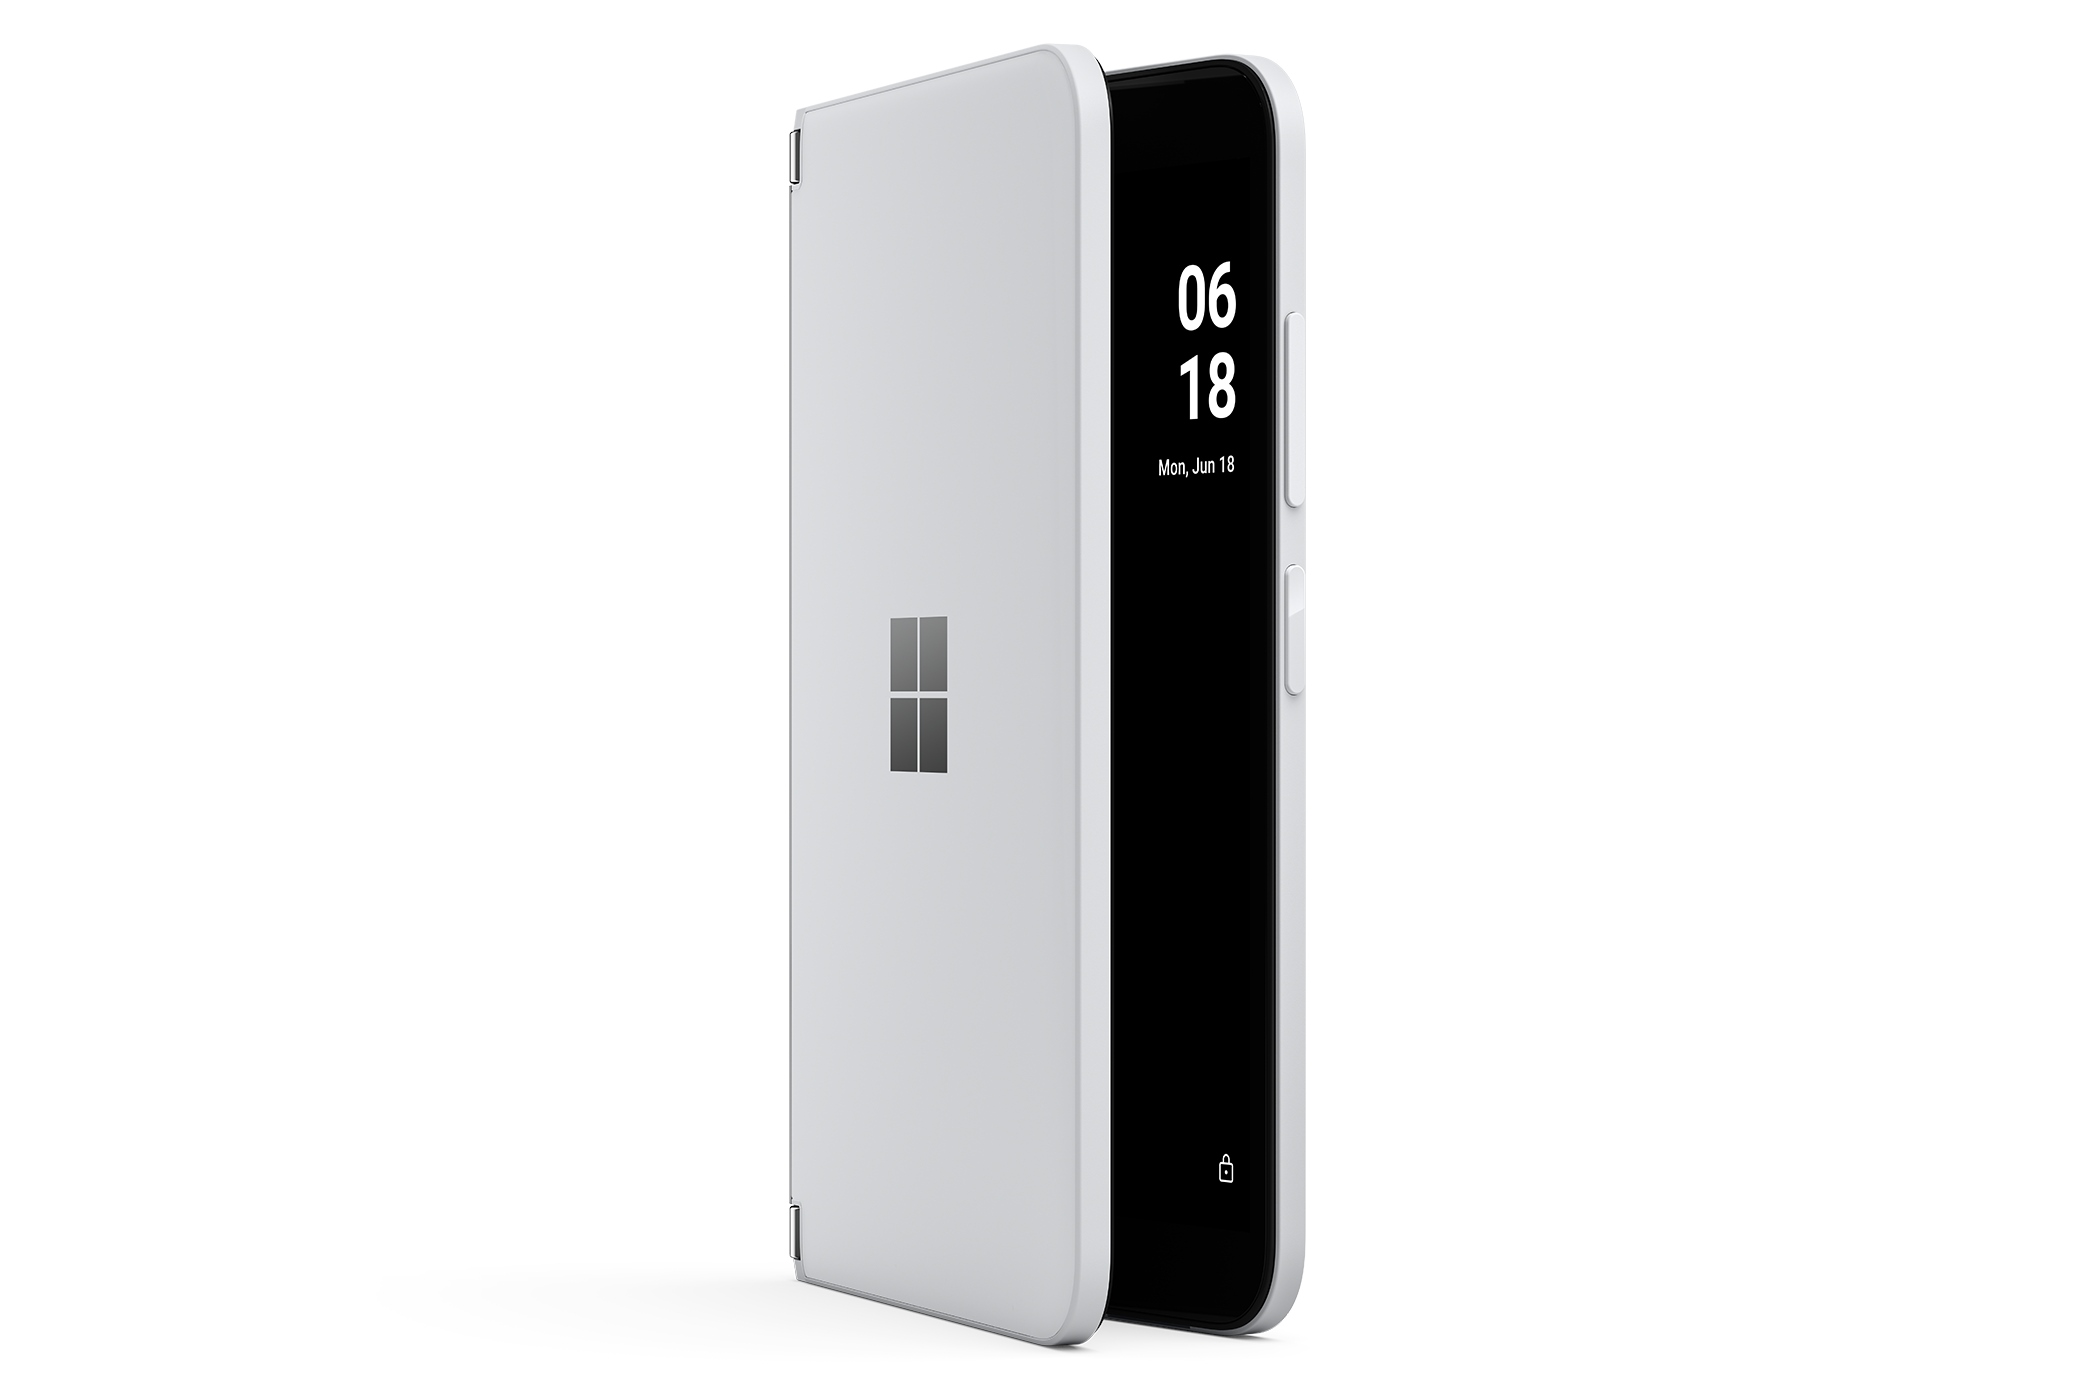 نمای جانبی گوشی موبایل سرفیس دوئو 2 مایکروسافت / Microsoft Surface Duo 2 سفید